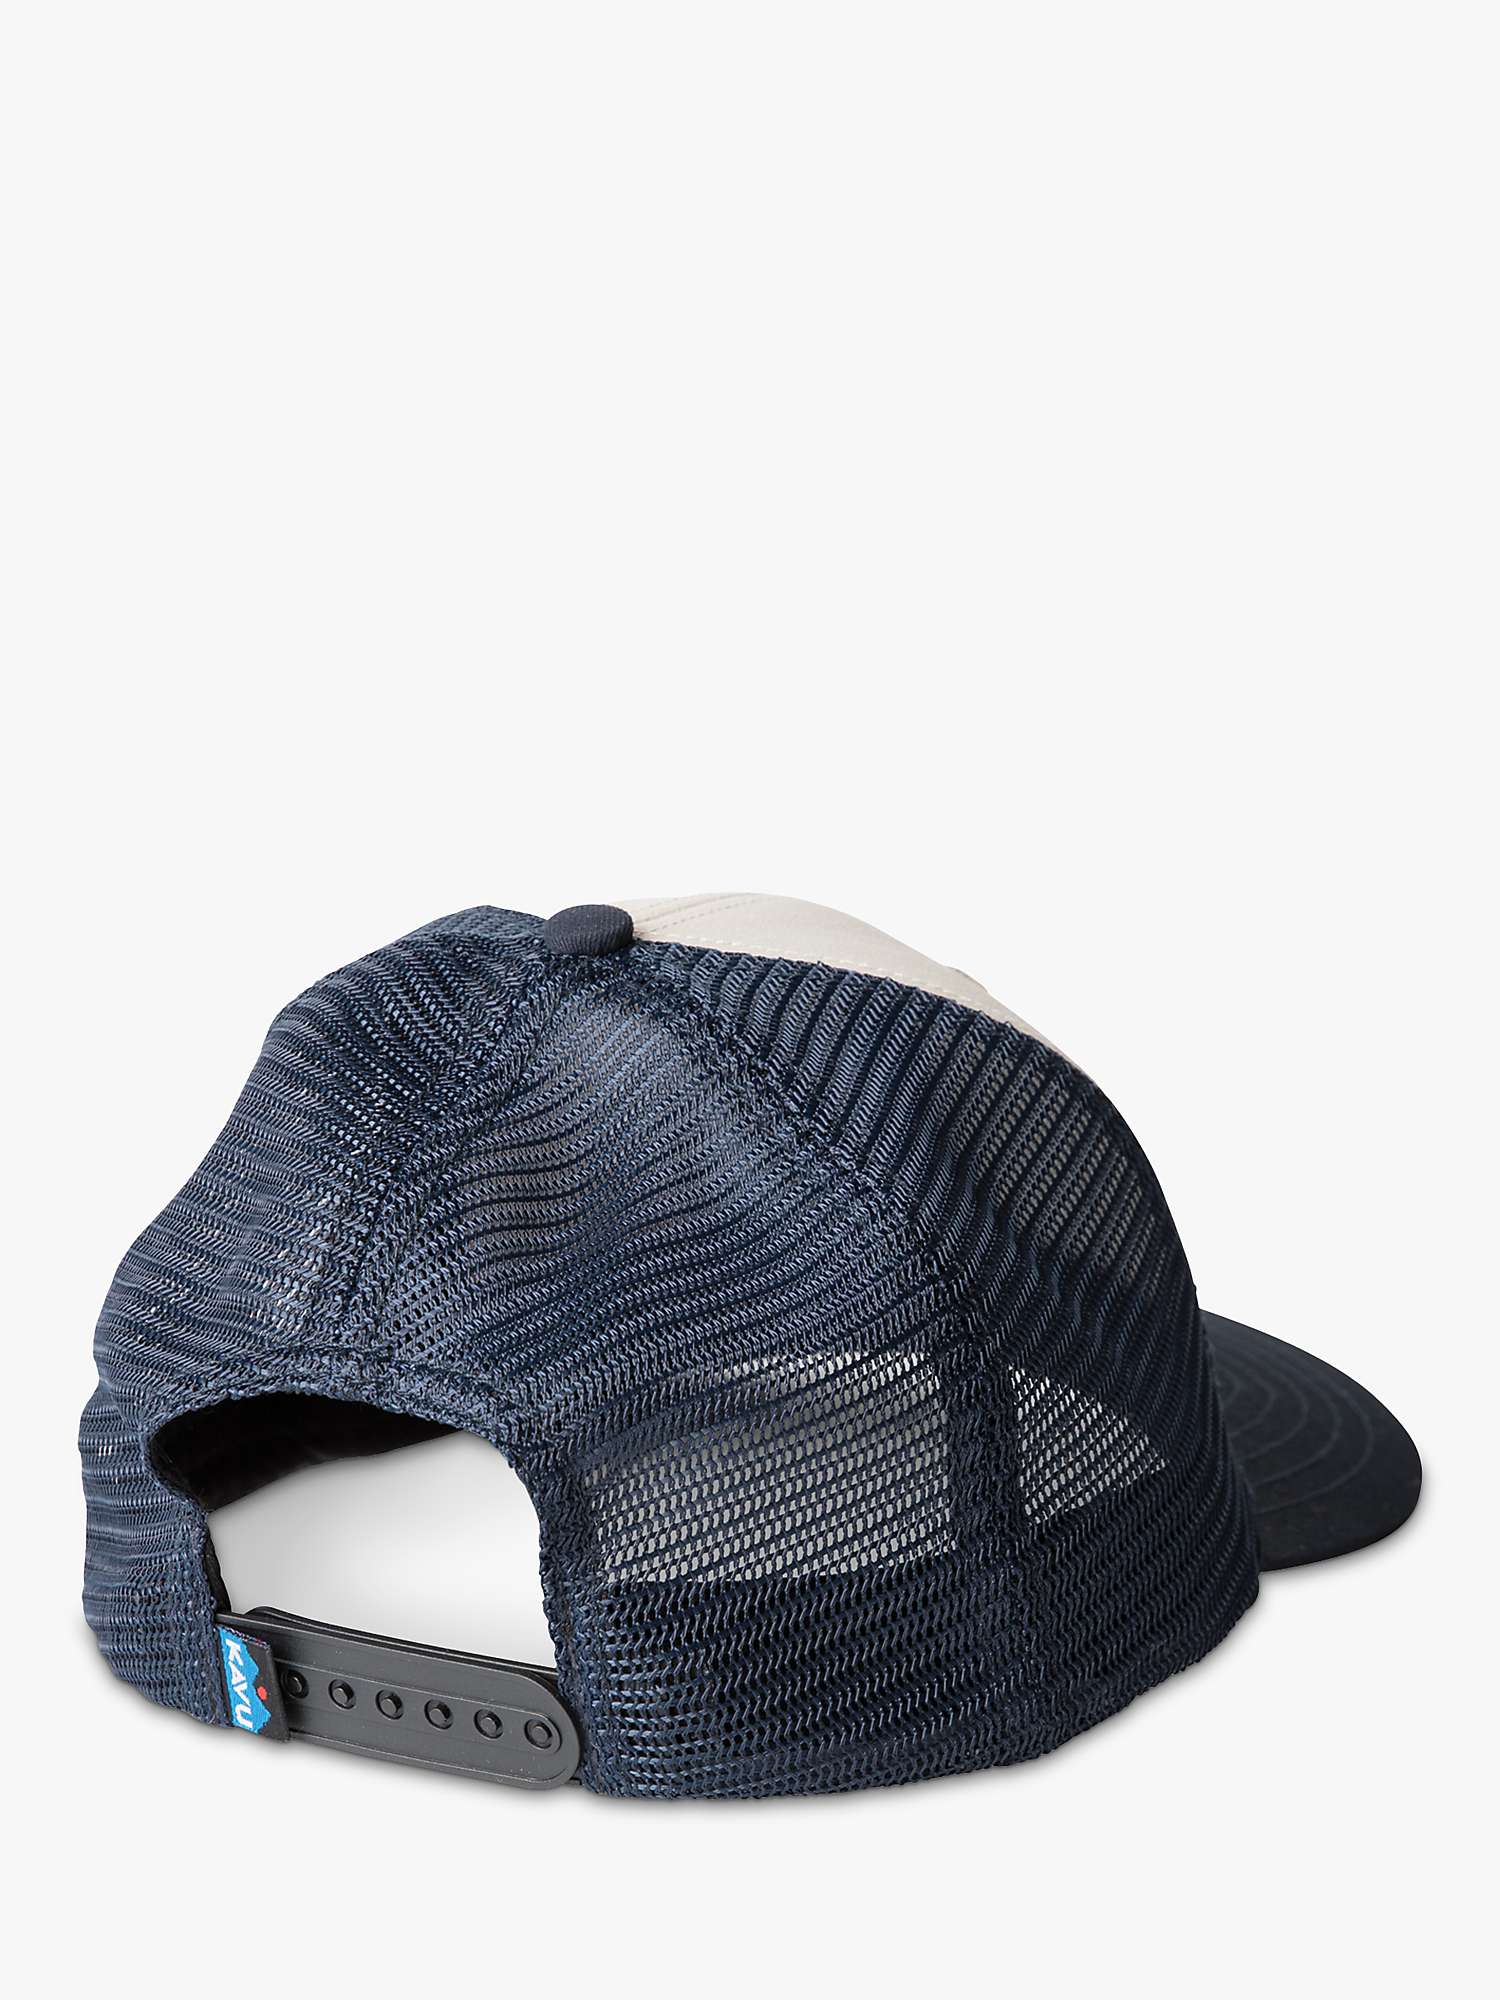 Buy KAVU Above Standard Hat, Blue/Multi Online at johnlewis.com